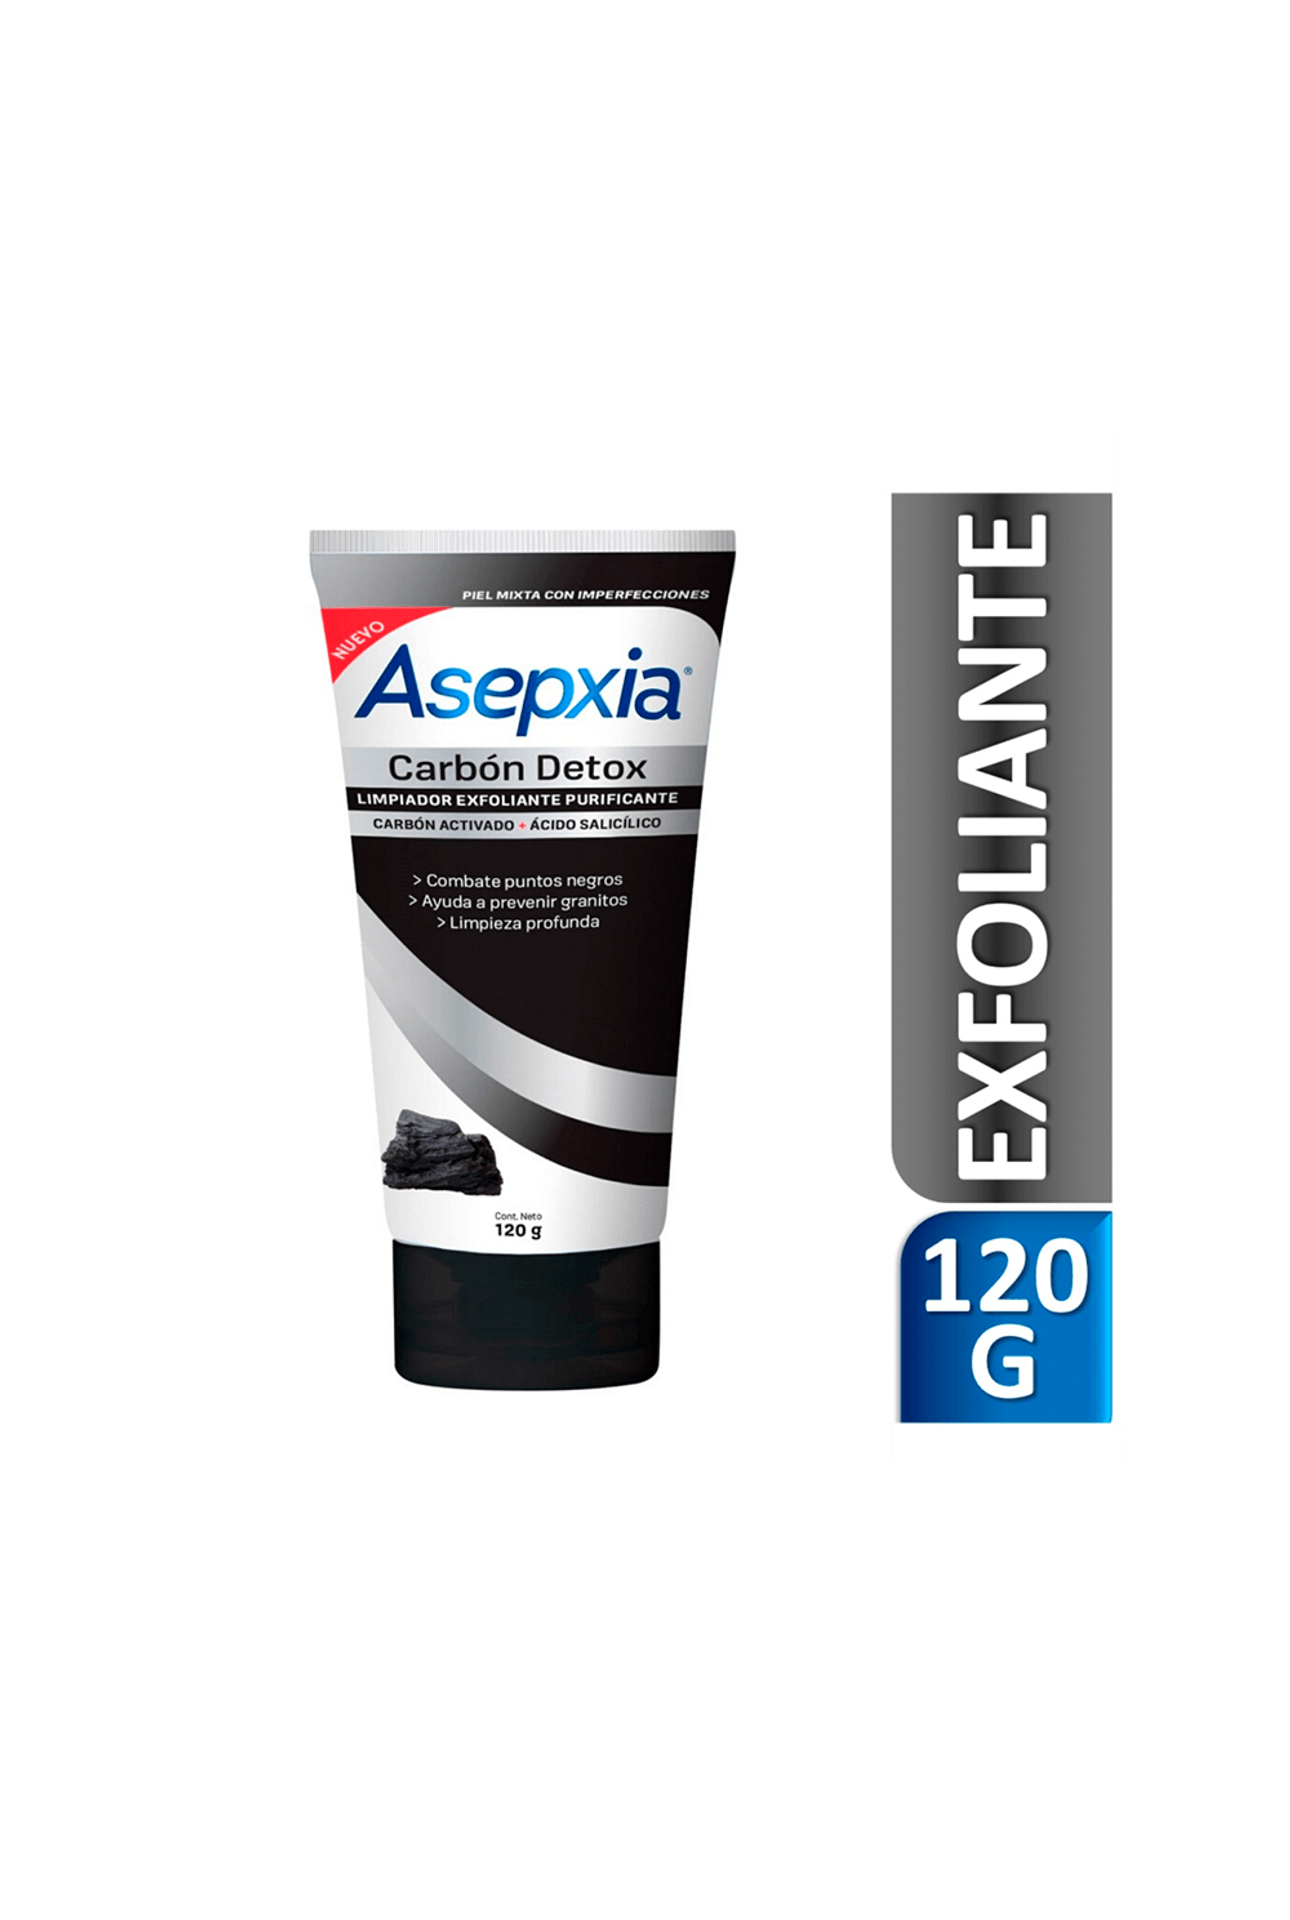 Asepxia-55908_Asepxia-Limpiador-Exfoliante-Carbon-Detox-x-120-gr_img1-7798140259435